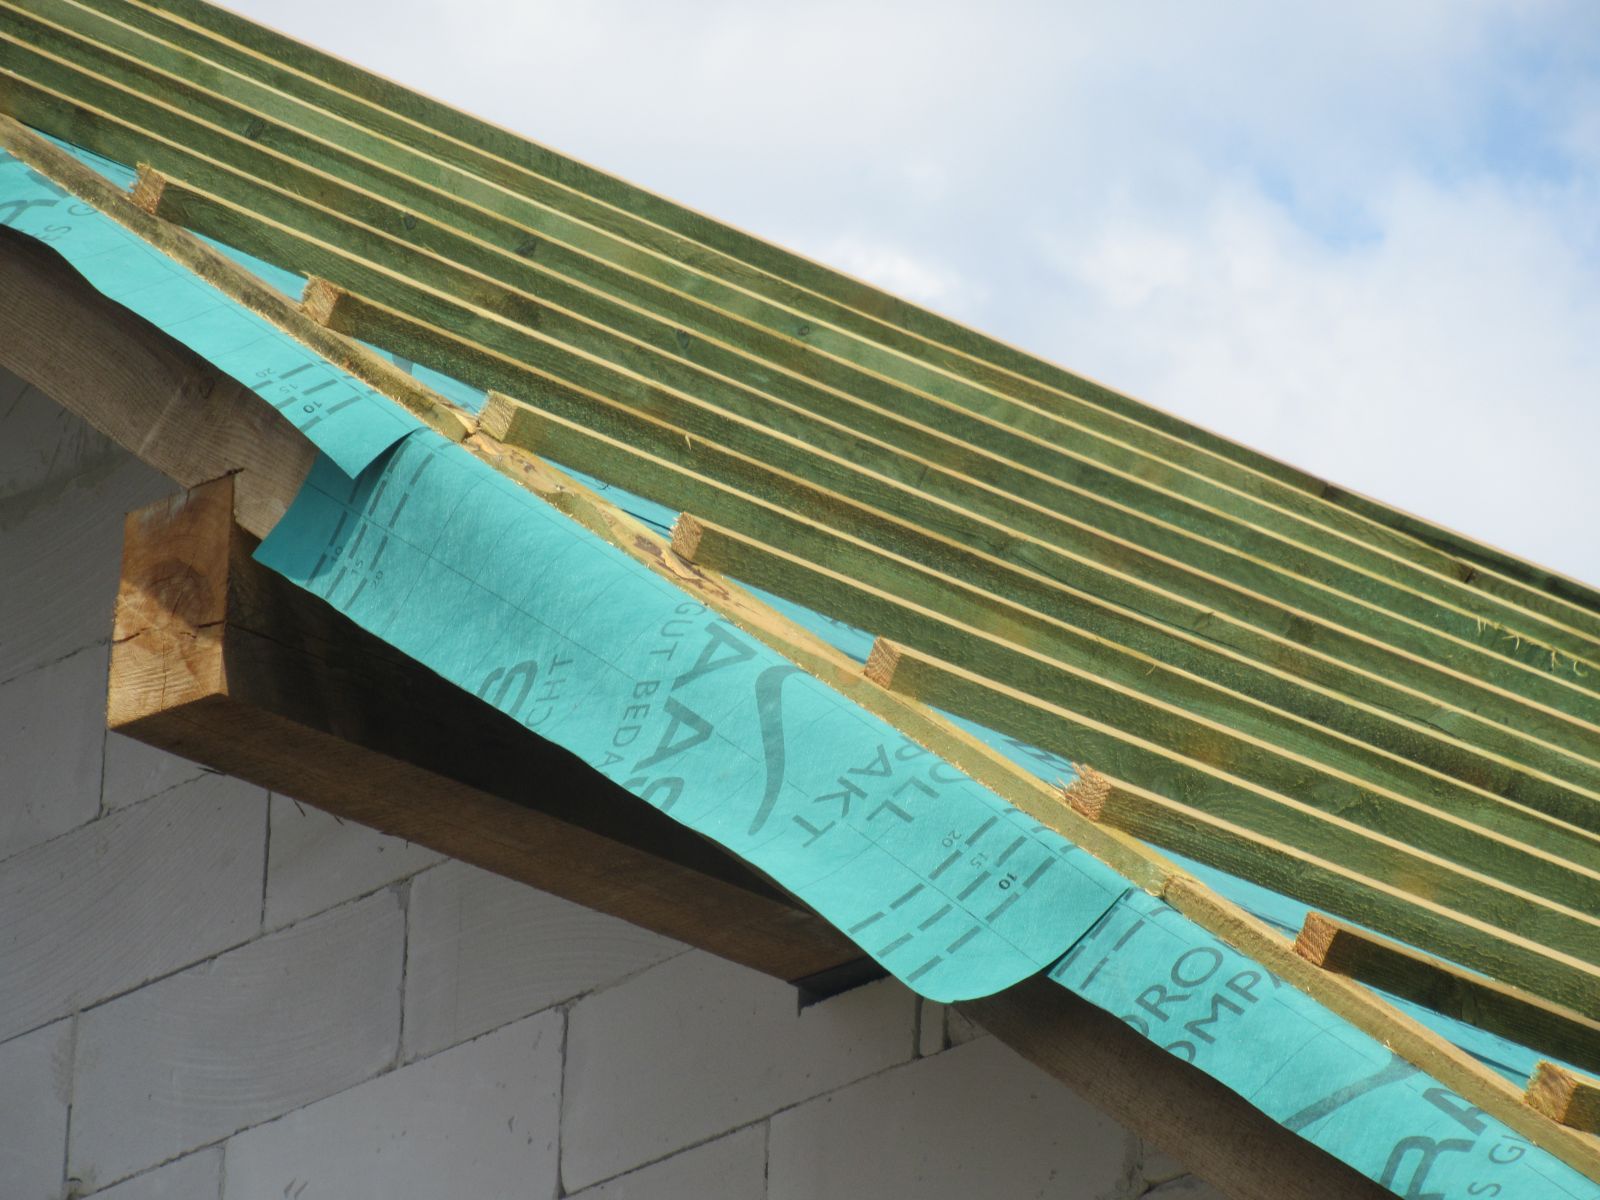 Folie dachowe najczęściej mają wytrasowane linie zakładów - łatwo sprawdzić, czy są zrobione poprawnie (fot. KMR)